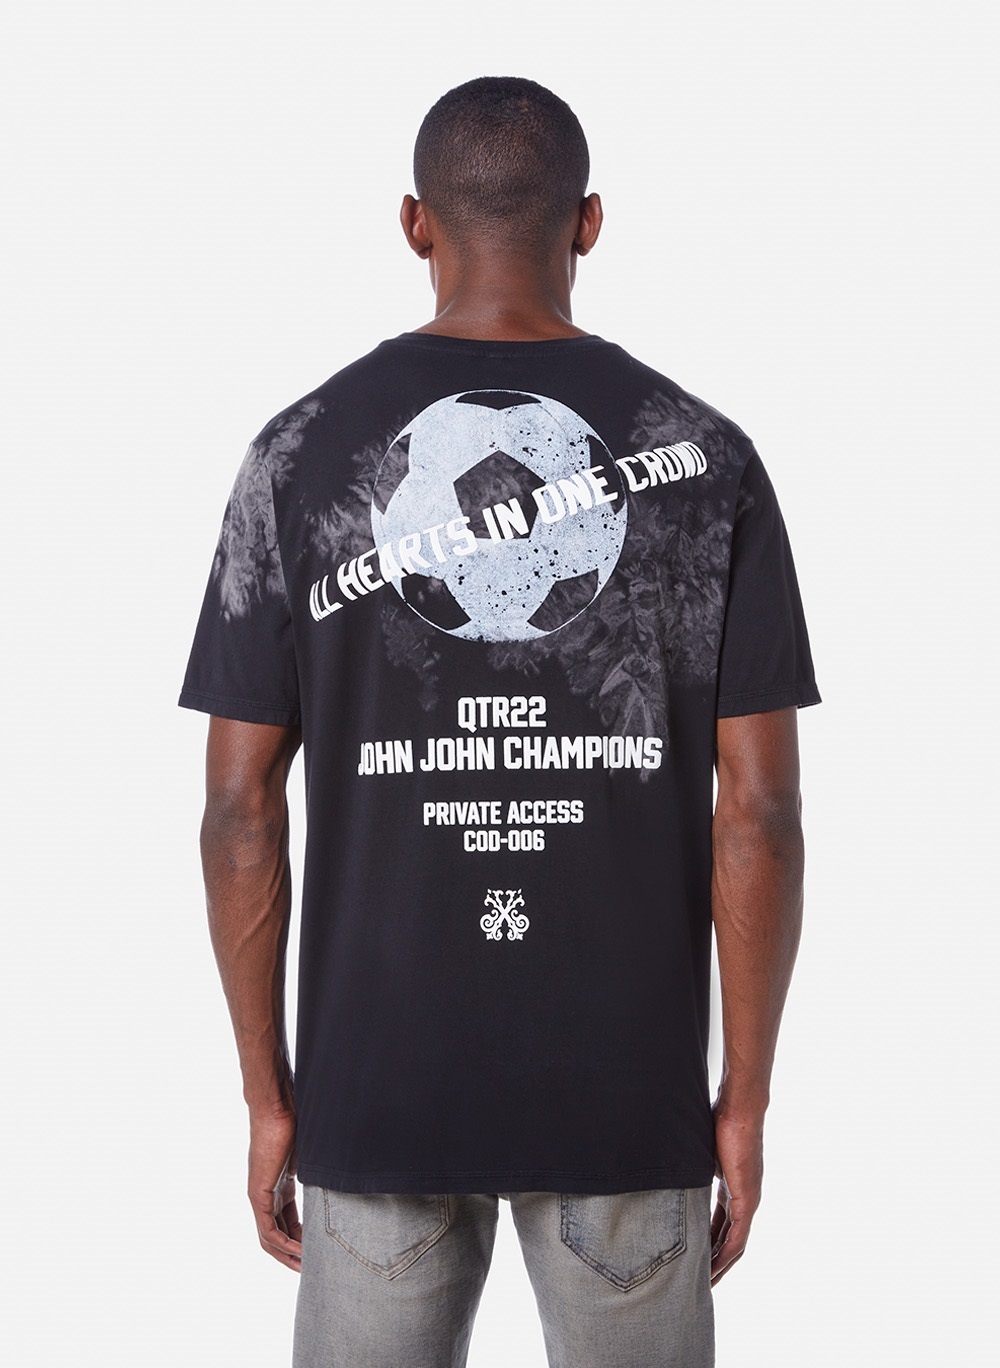 Camiseta John John Masculina Atacado minimo 5 unidades - Virtual Mix Atacado